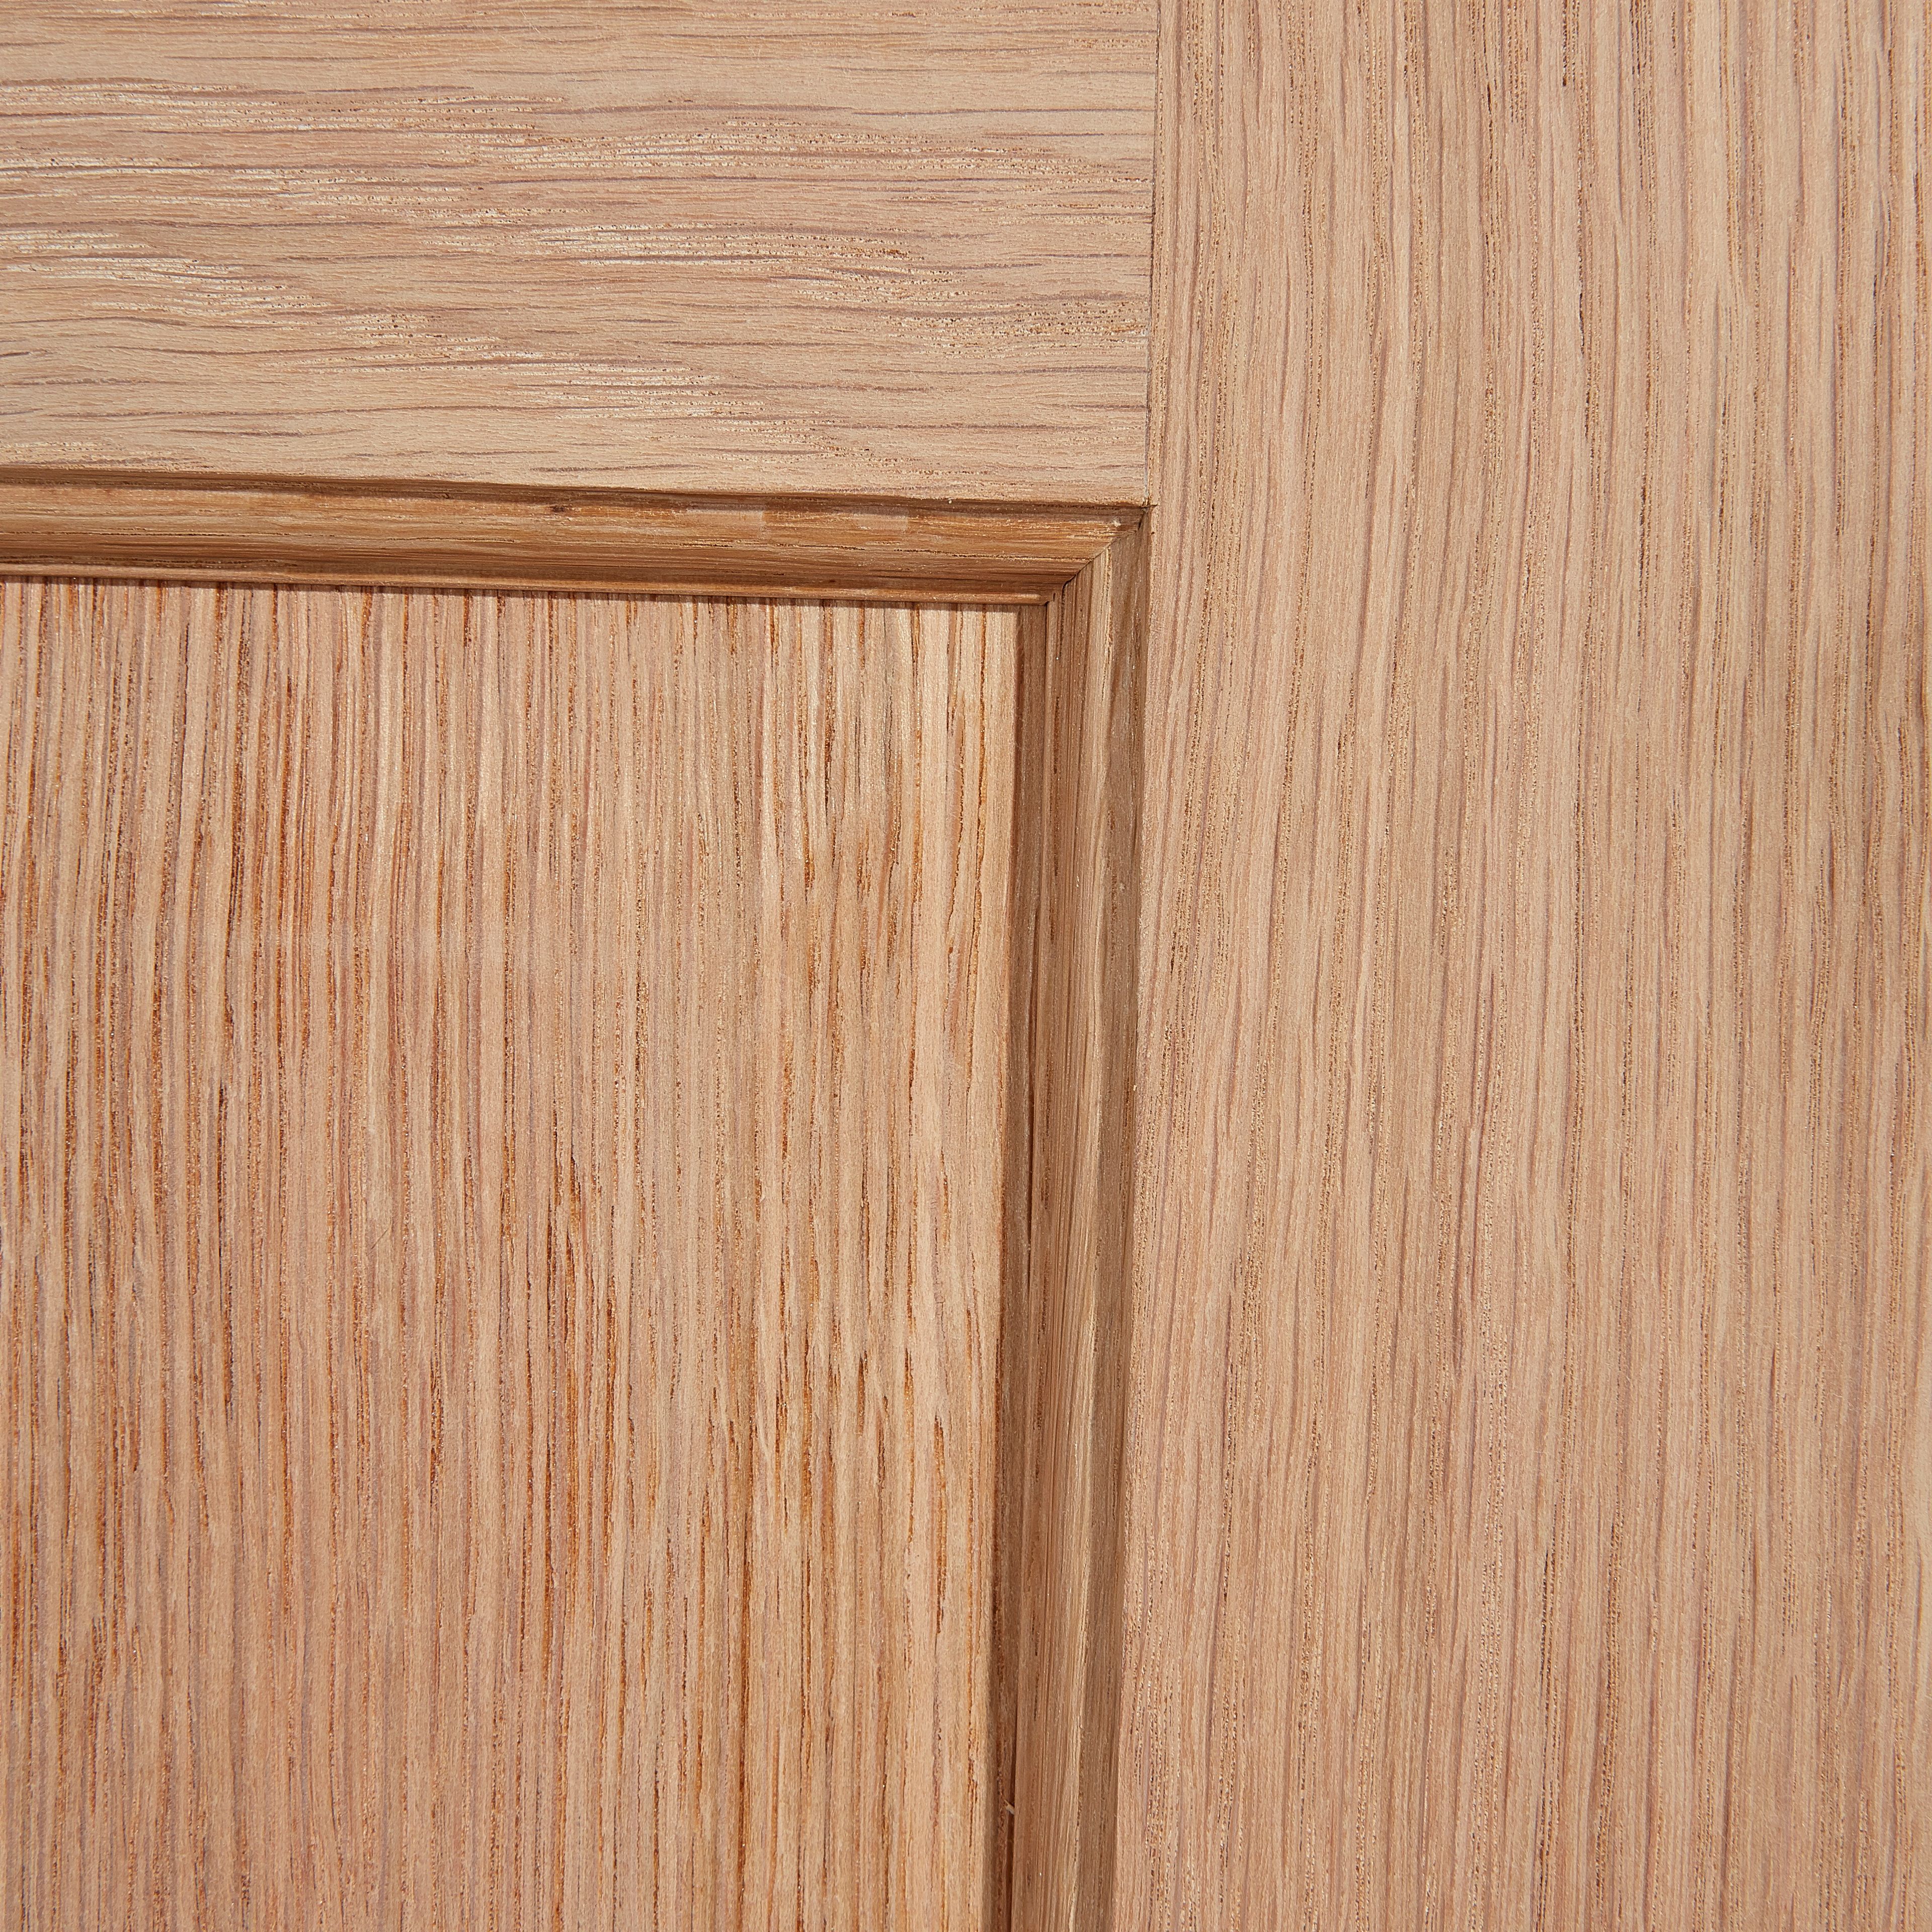 4 panel Unglazed Oak veneer Internal Door, (H)1981mm (W)838mm (T)35mm